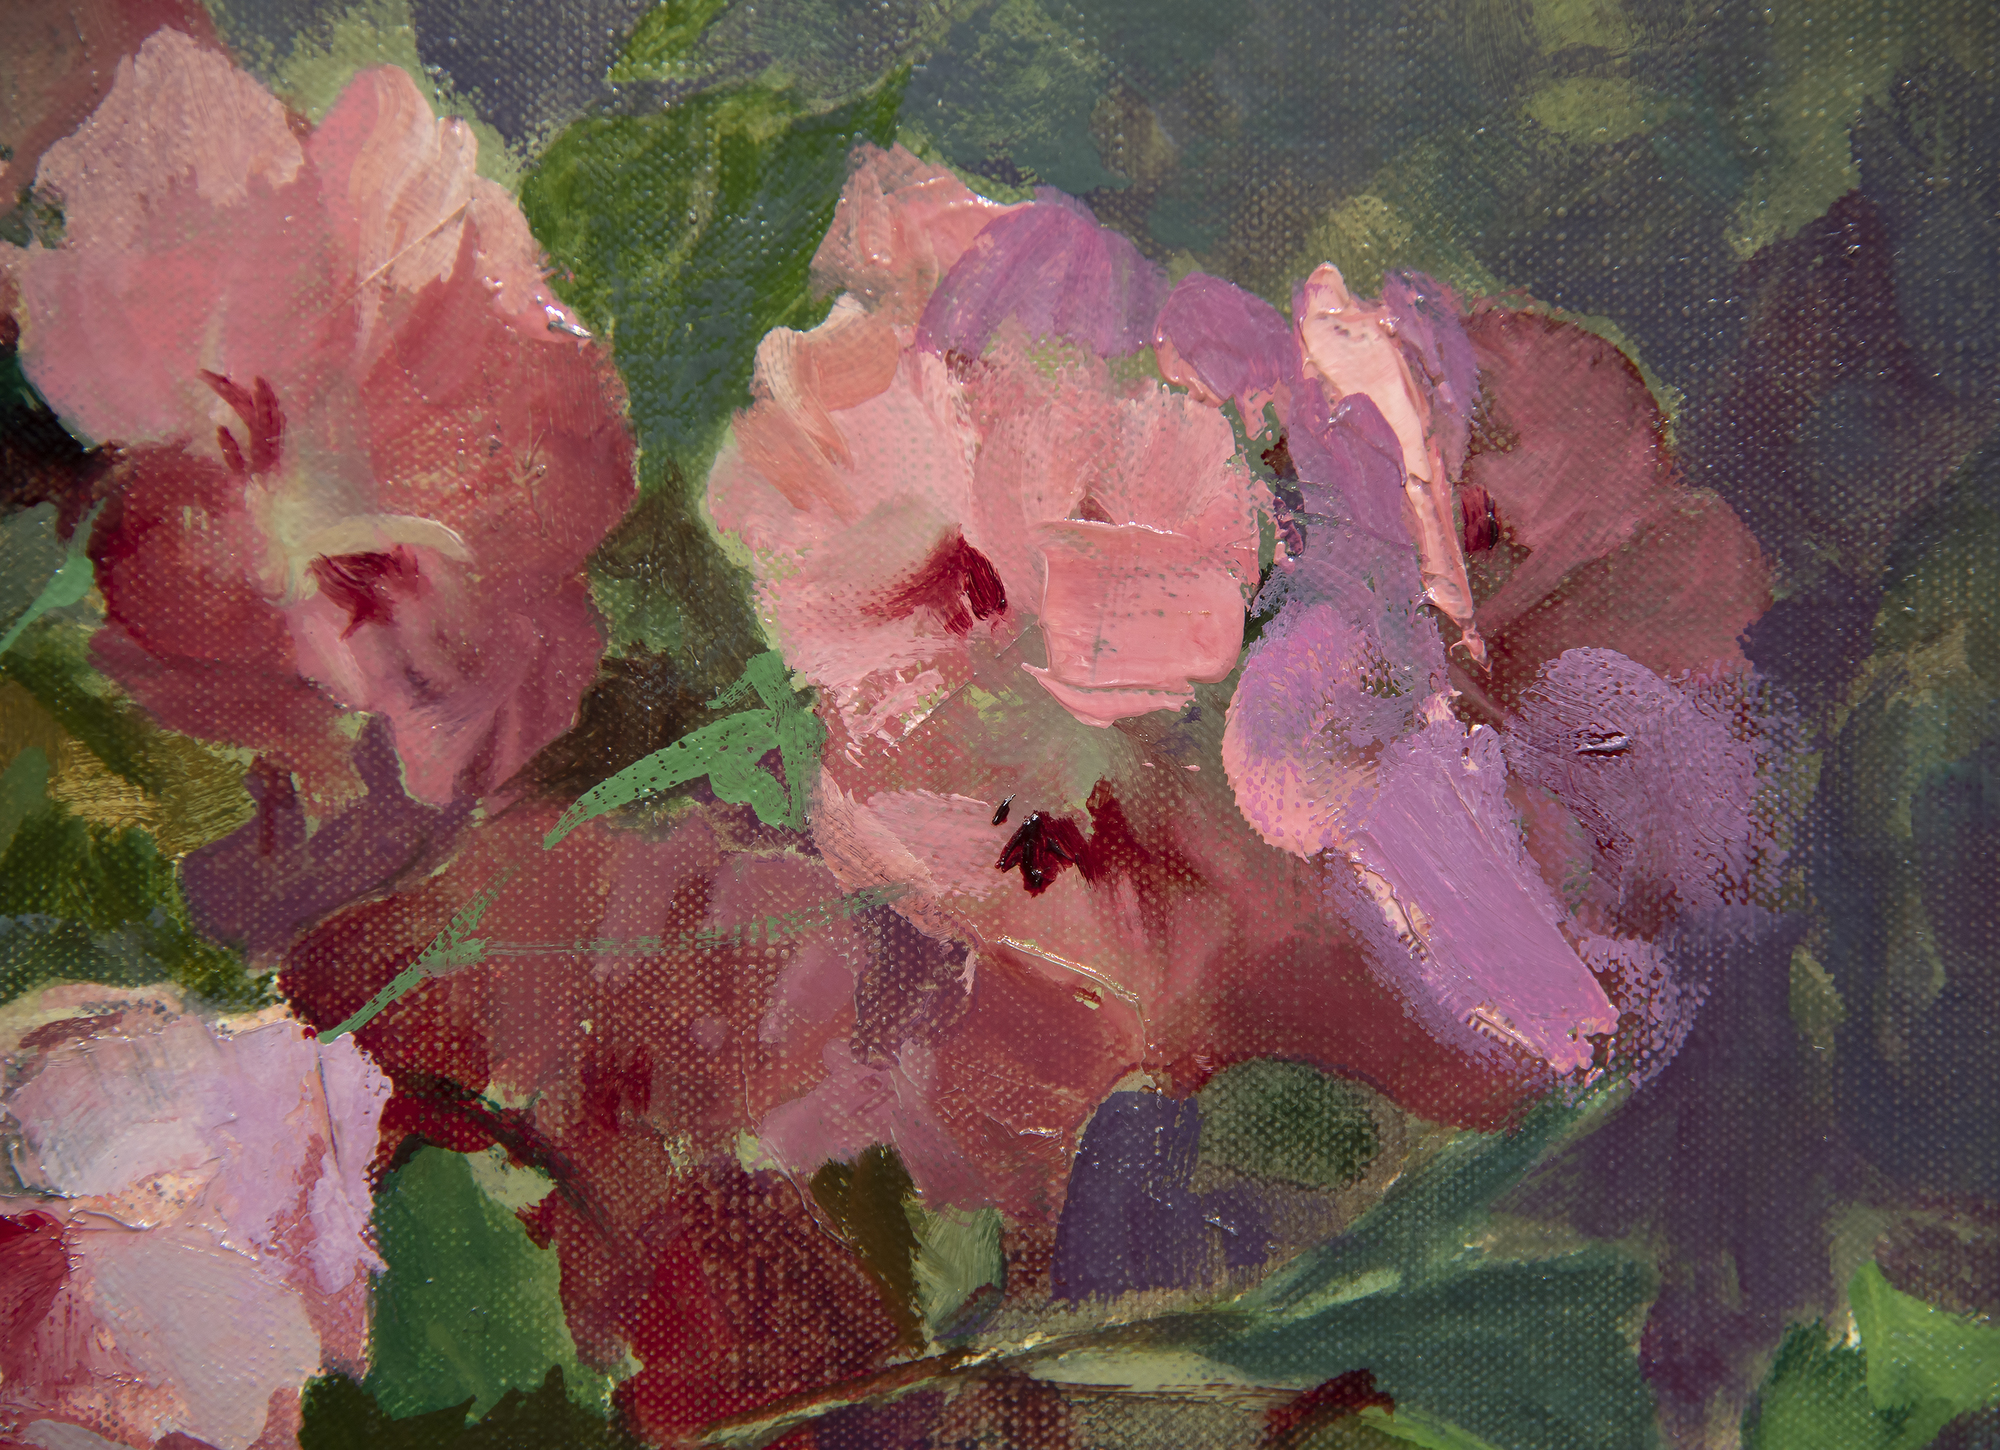 NELL WALKER WARNER - Pelargoniums - oil on canvas - 26 x 30 in.